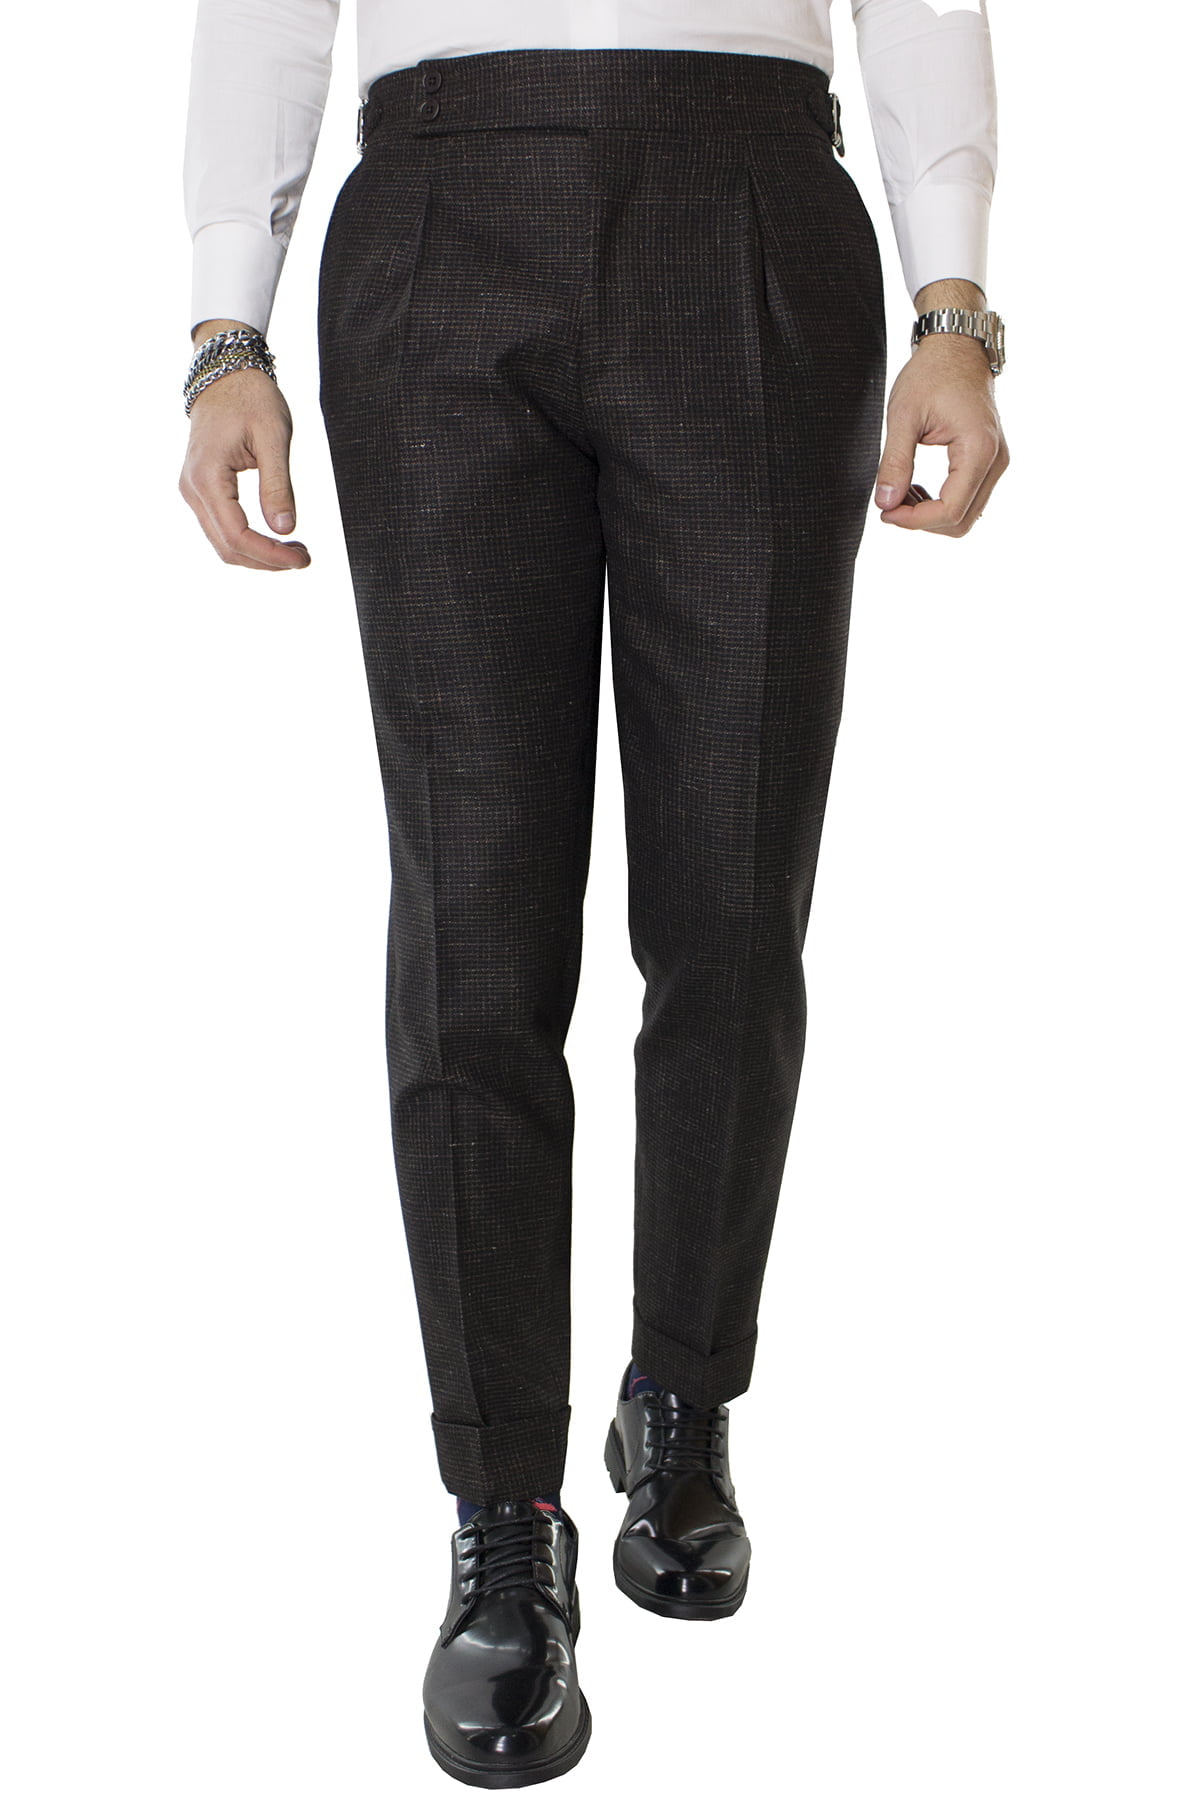 Pantalone uomo marrone fantasia micro nera in lana vita alta con pinces e fibbie laterali vitale barberis canonico